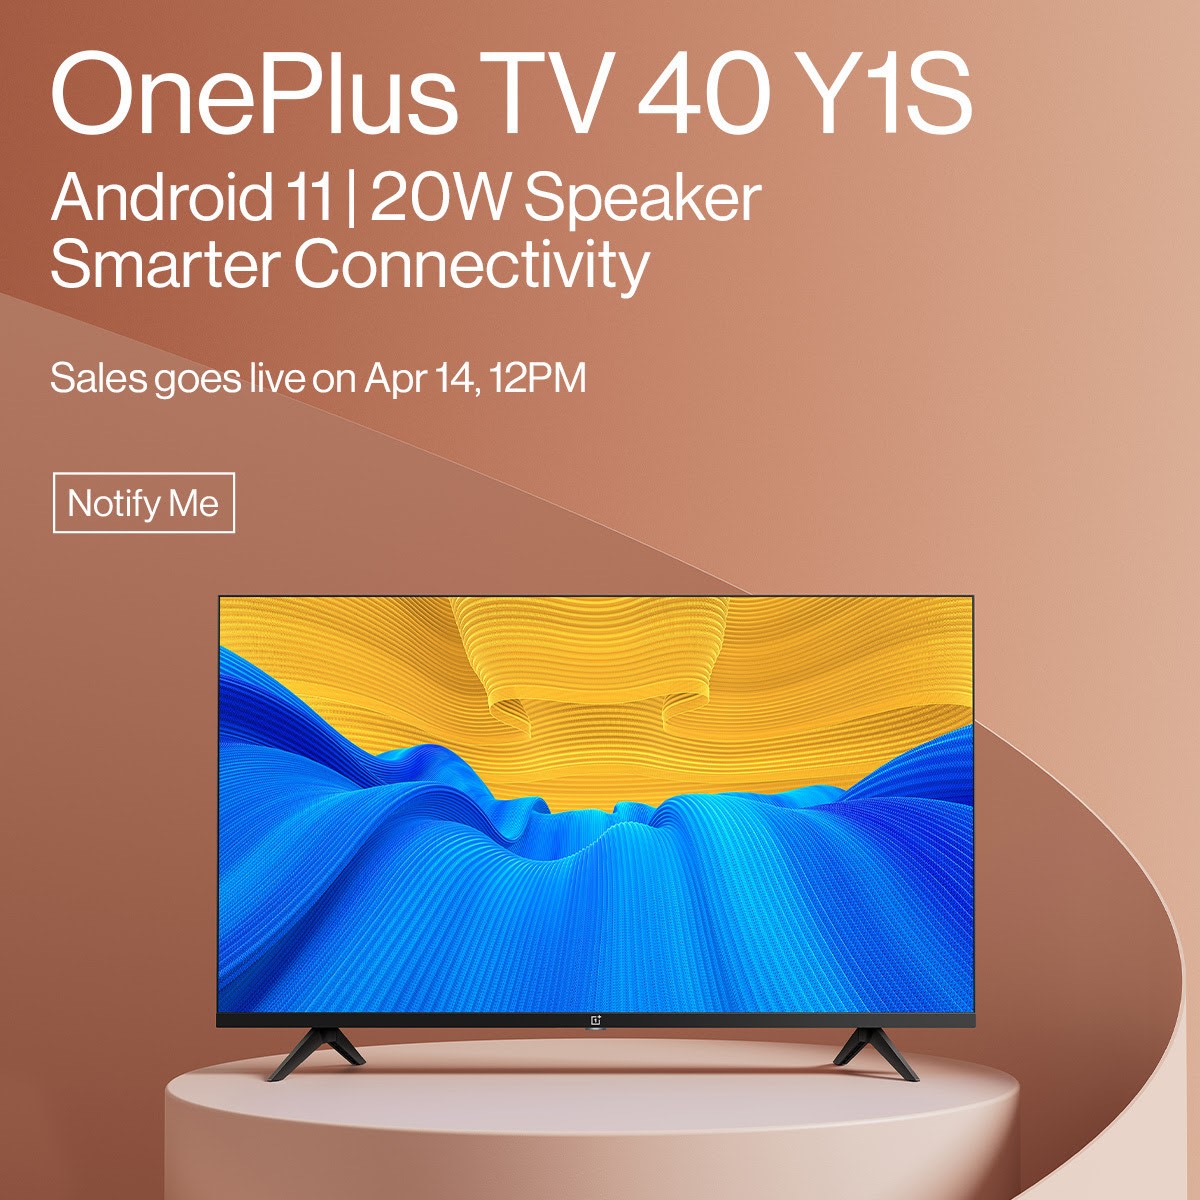 OnePlus TV 40 Y1S